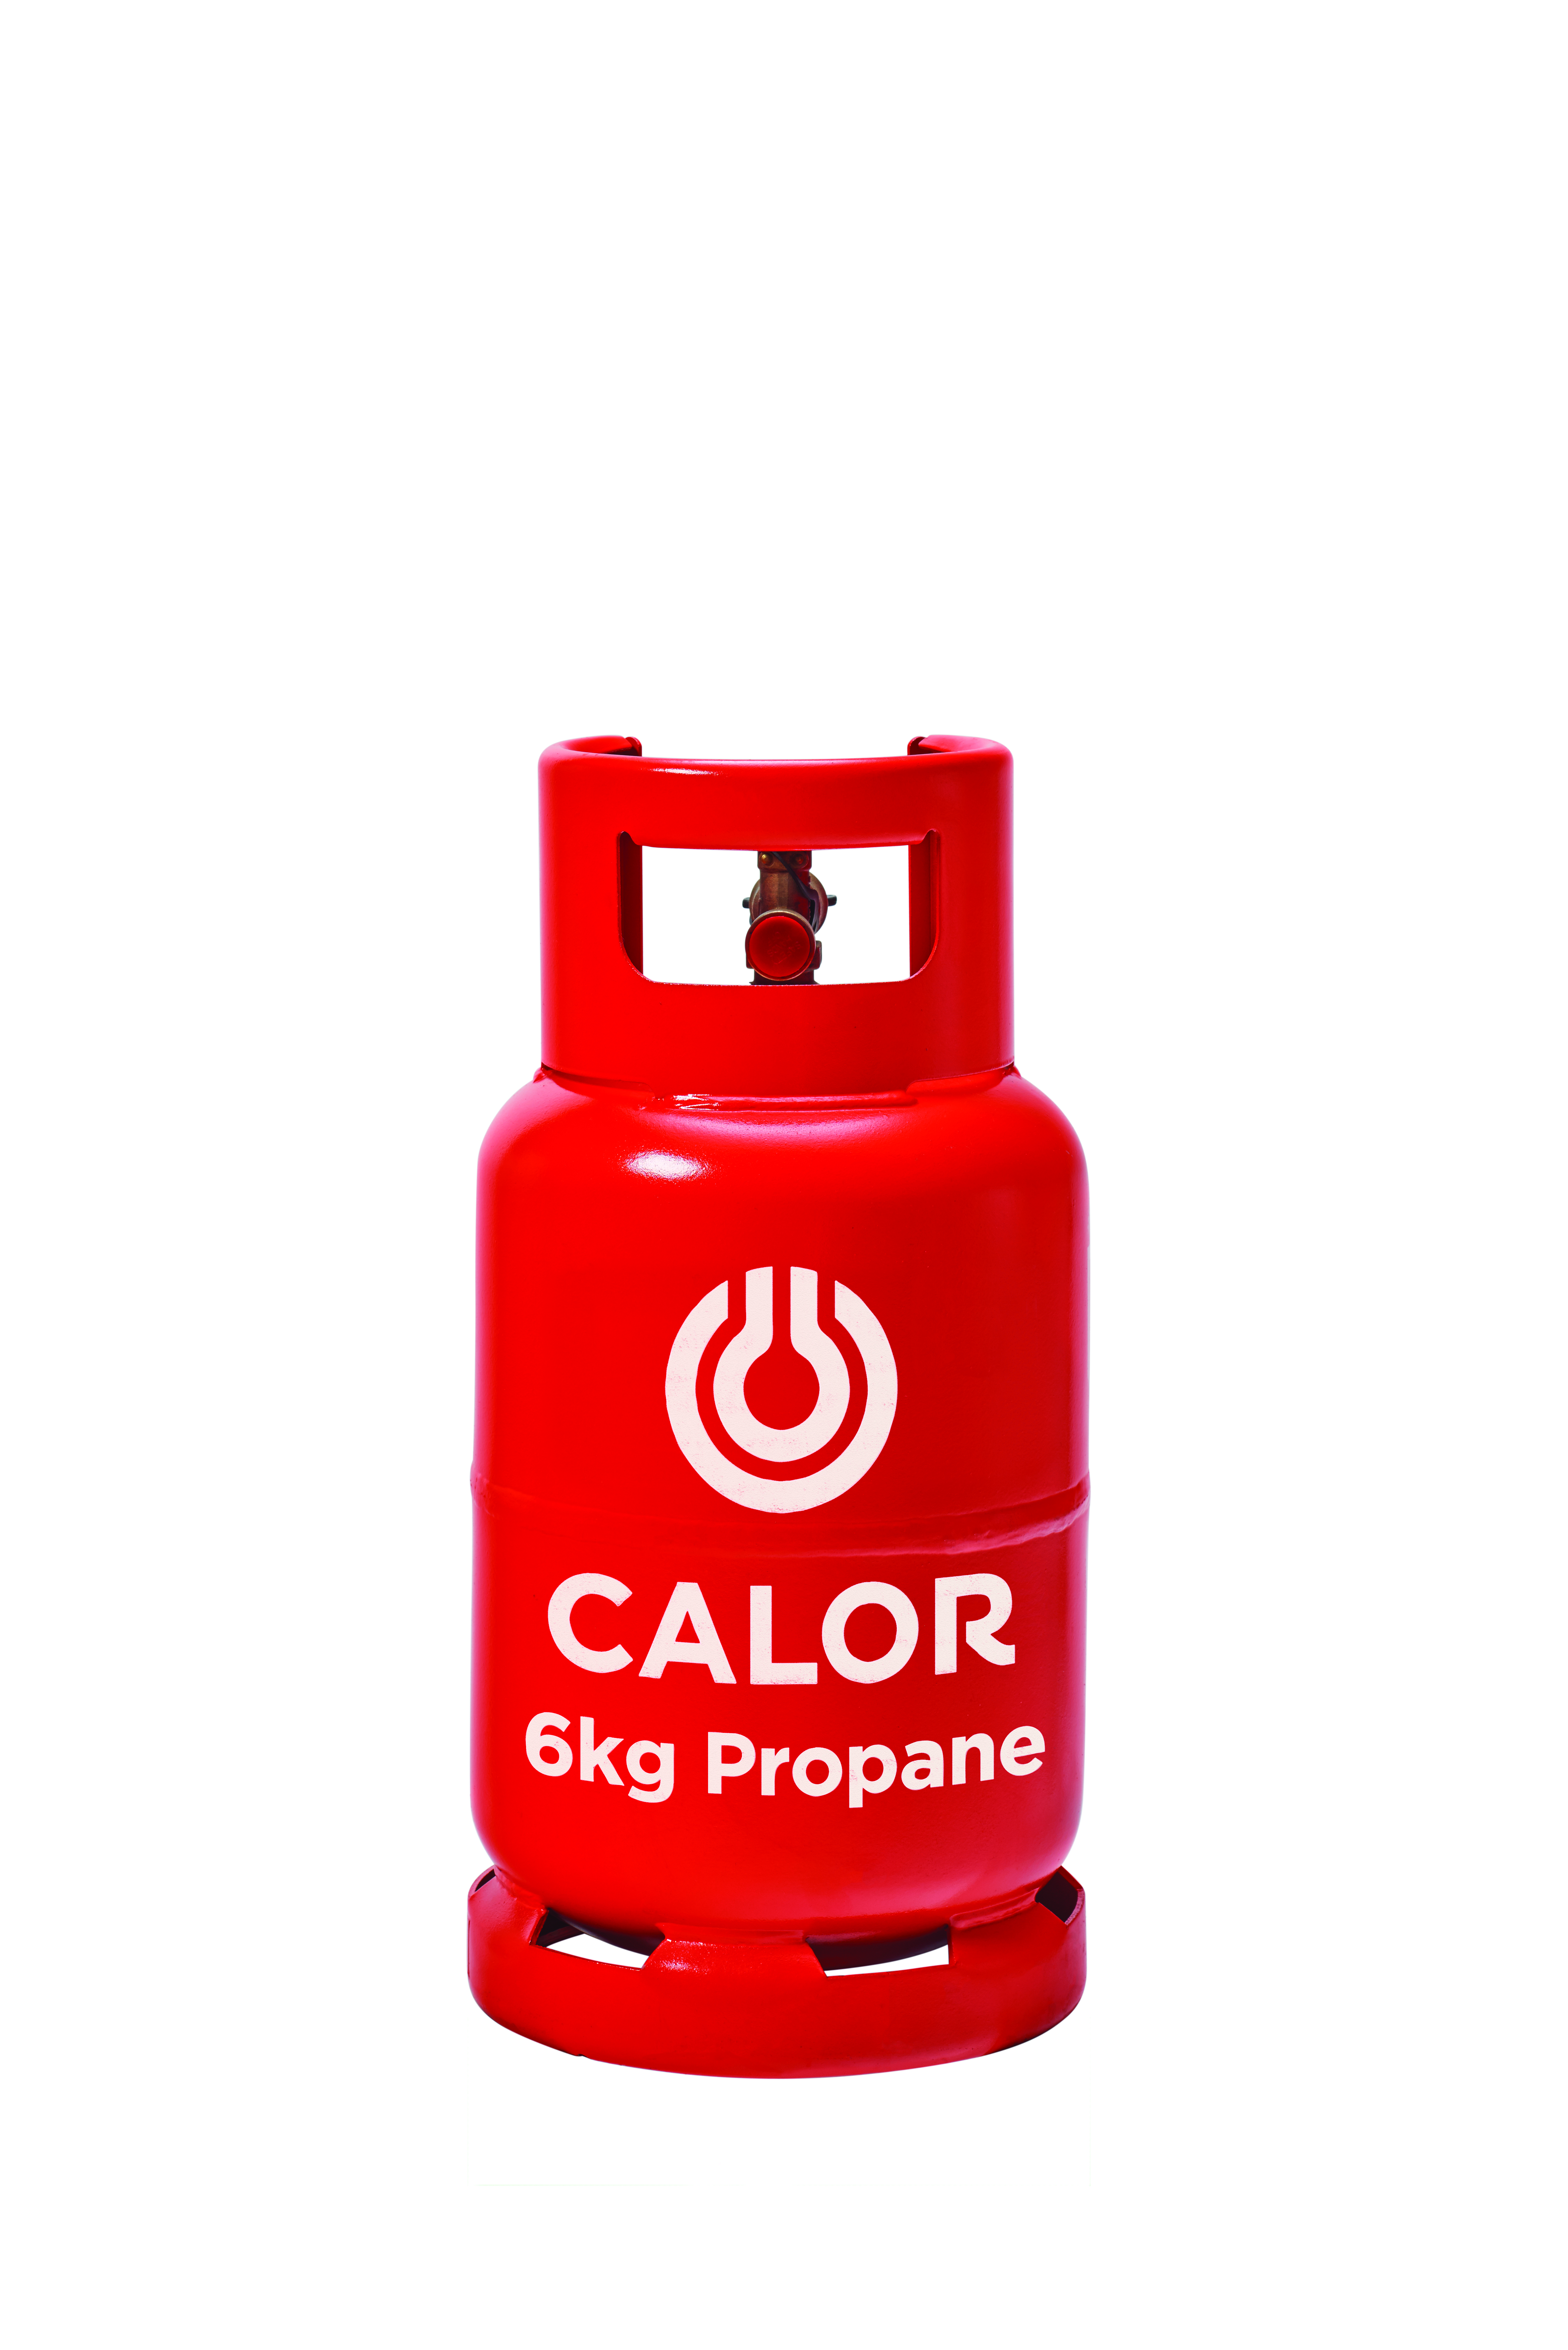 6kg Propane Calor Gas Bottle